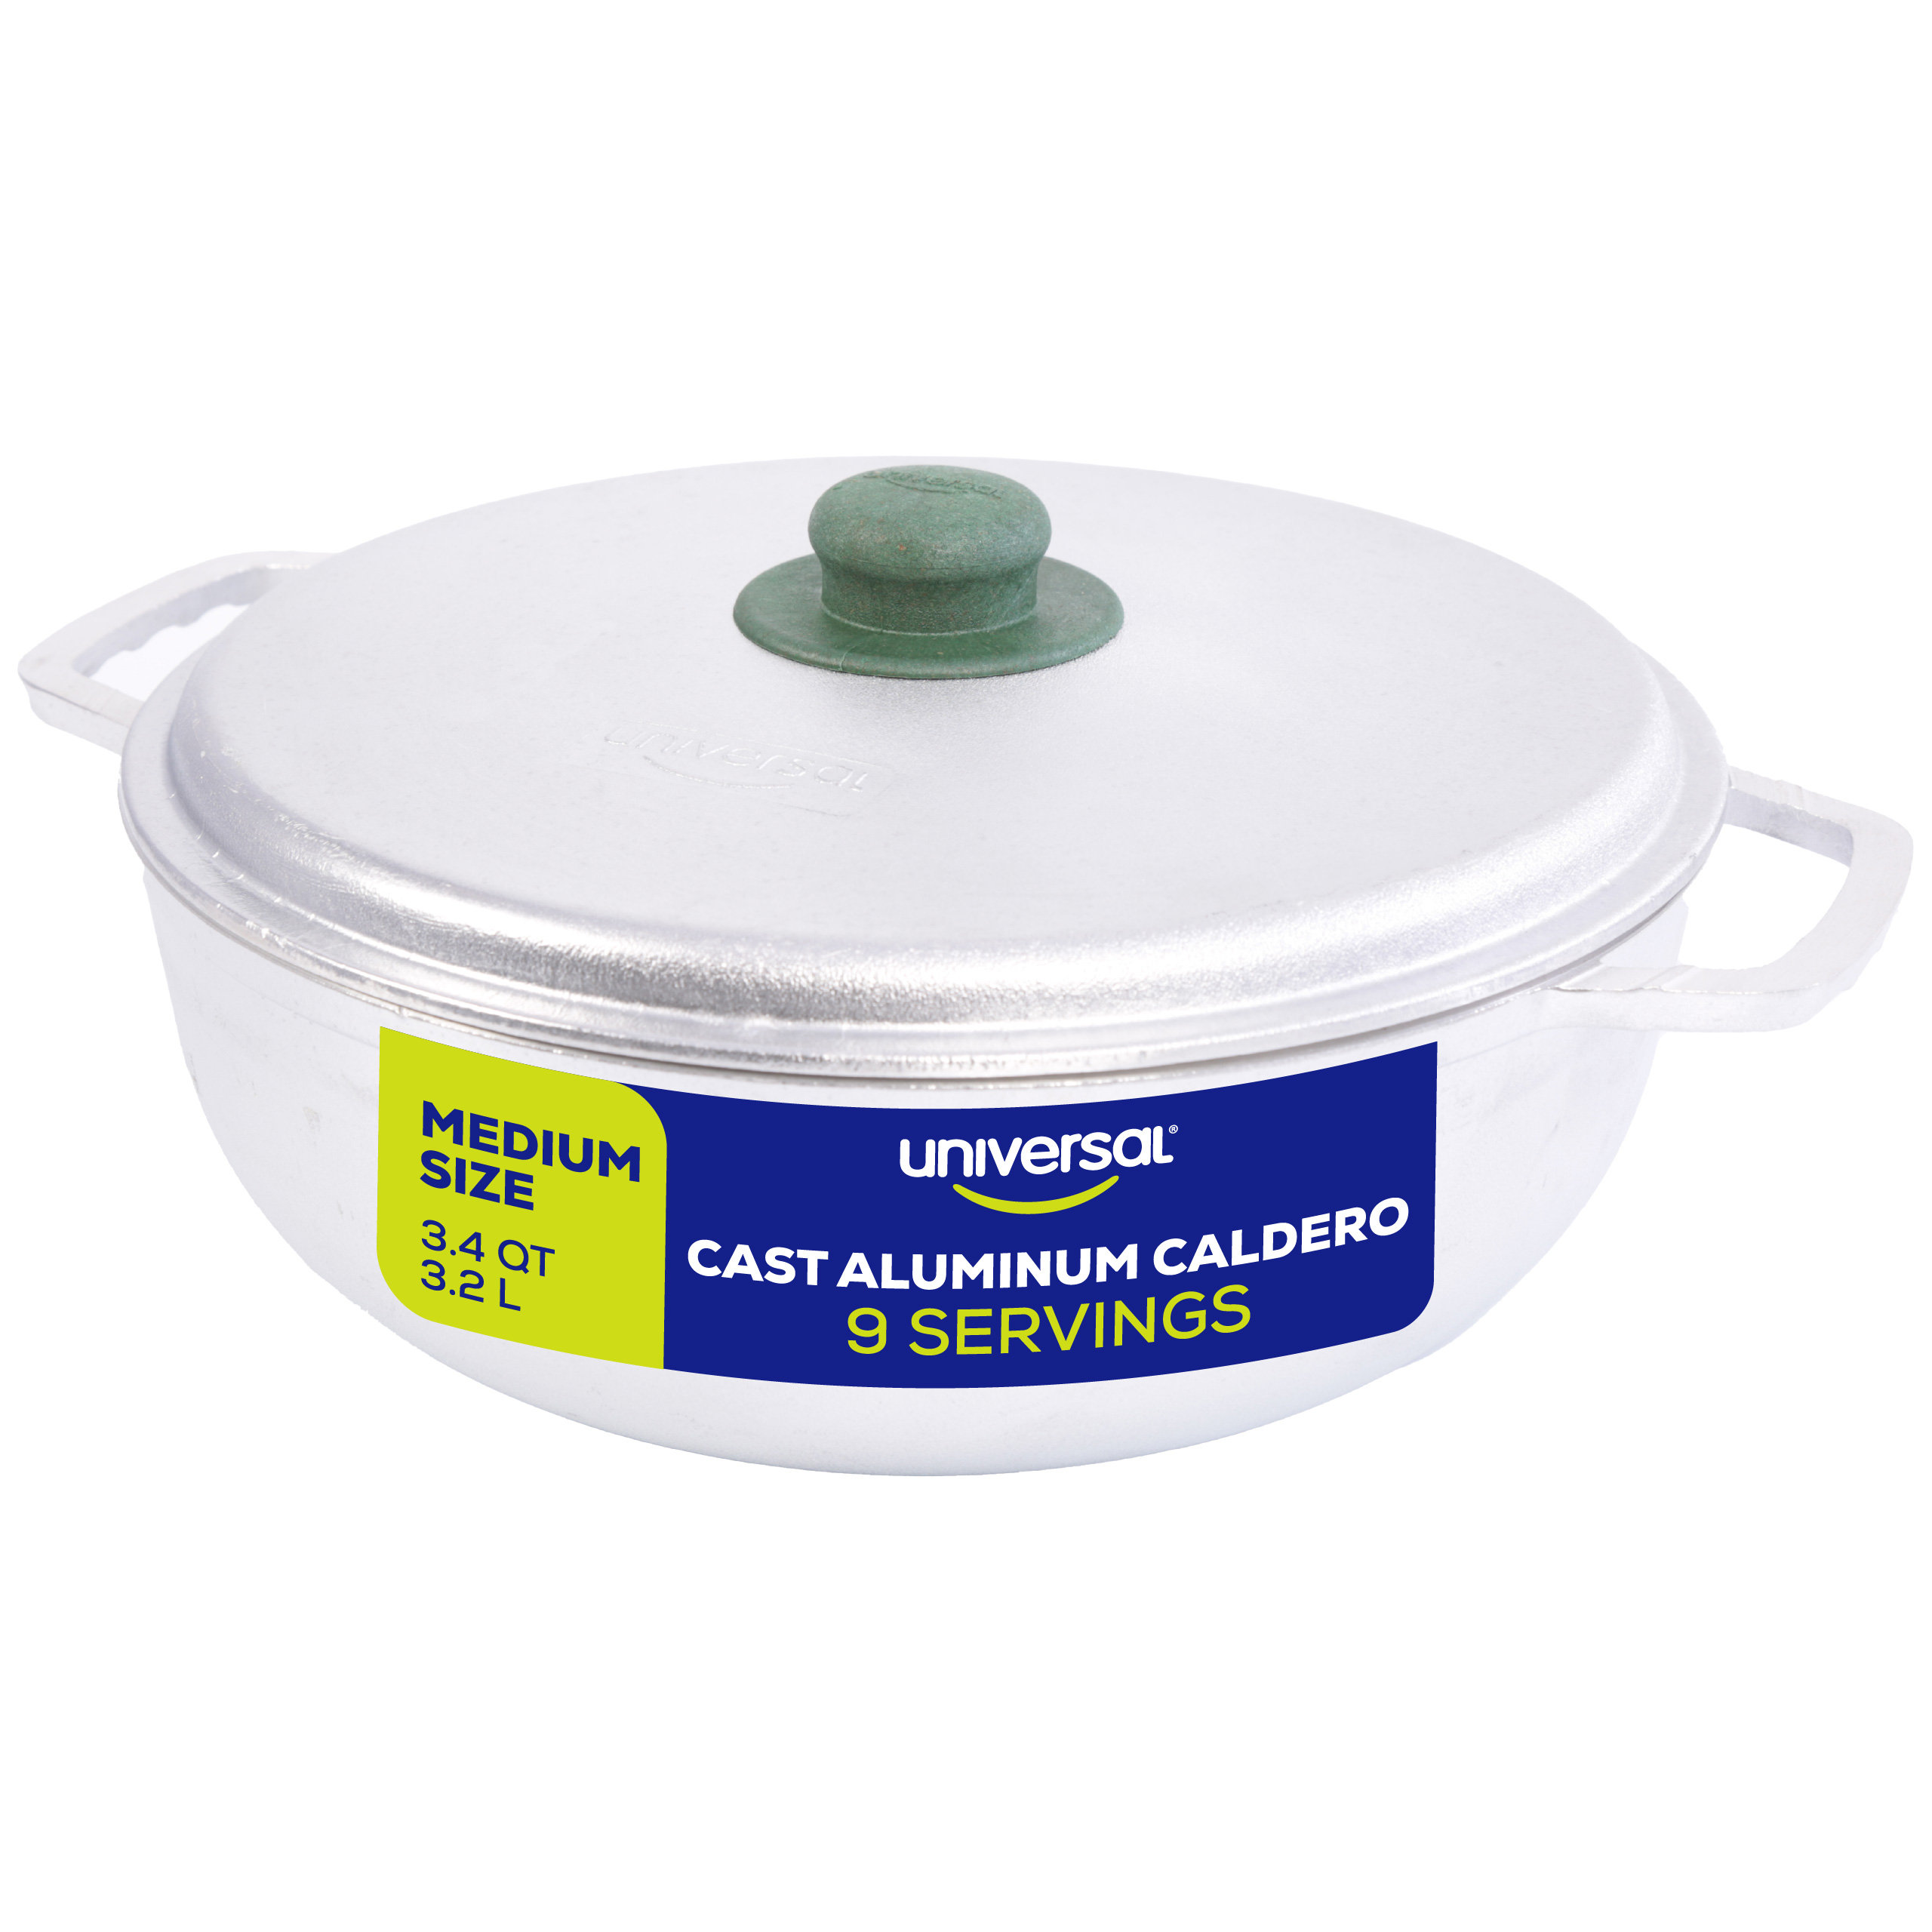 https://assets.wfcdn.com/im/72989337/compr-r85/2395/239535239/universal-cast-aluminum-caldero-round-dutch-oven-rice-cooker.jpg